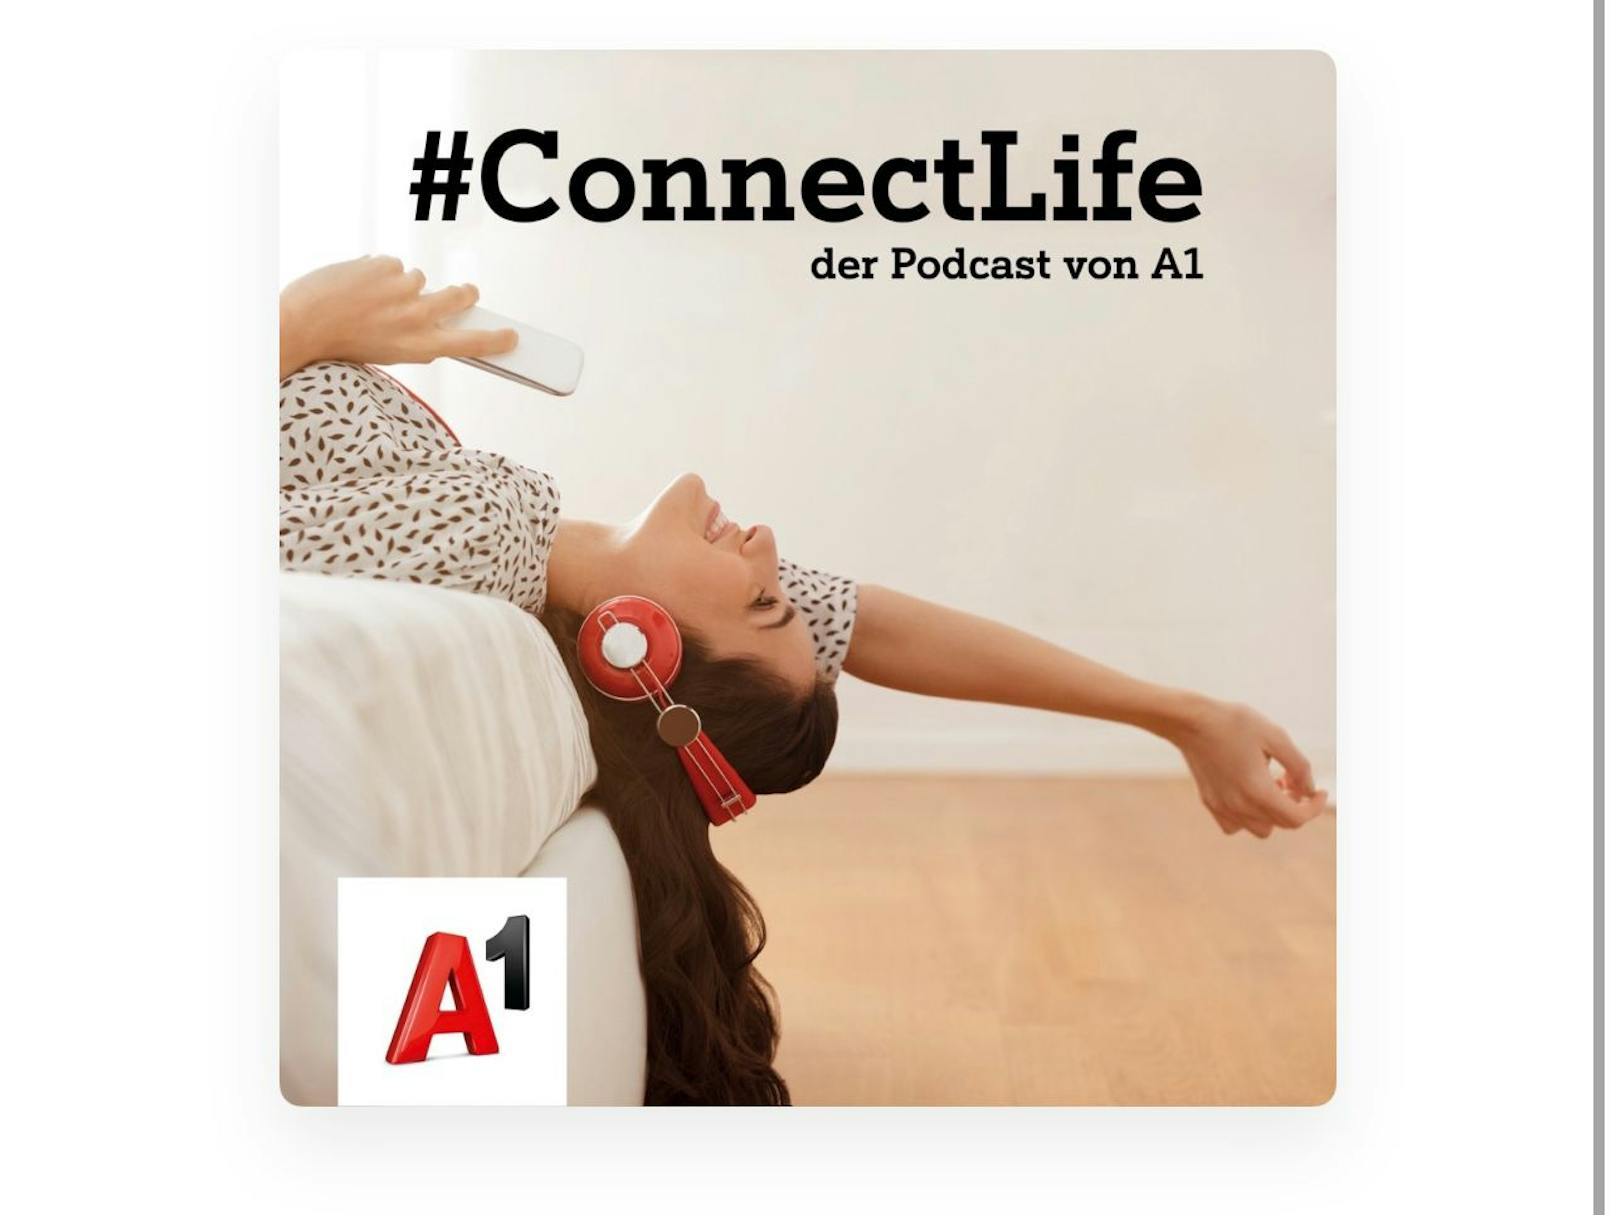 A1 startet Digitalisierungs-Podcast "#ConnectLife – der Podcast von A1".